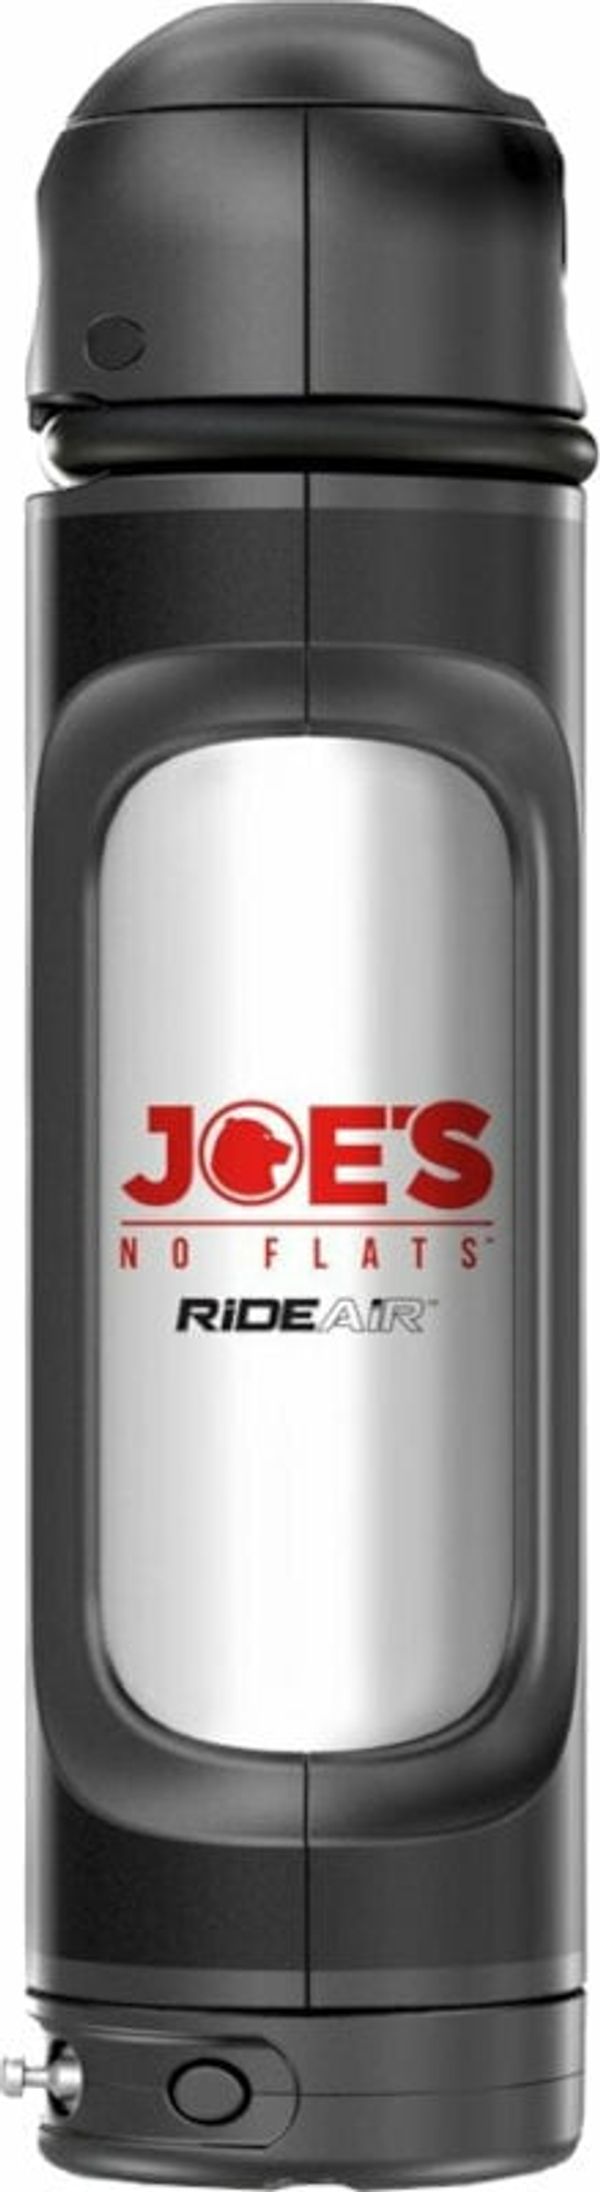 Joe's No Flats Joe's No Flats RideAir